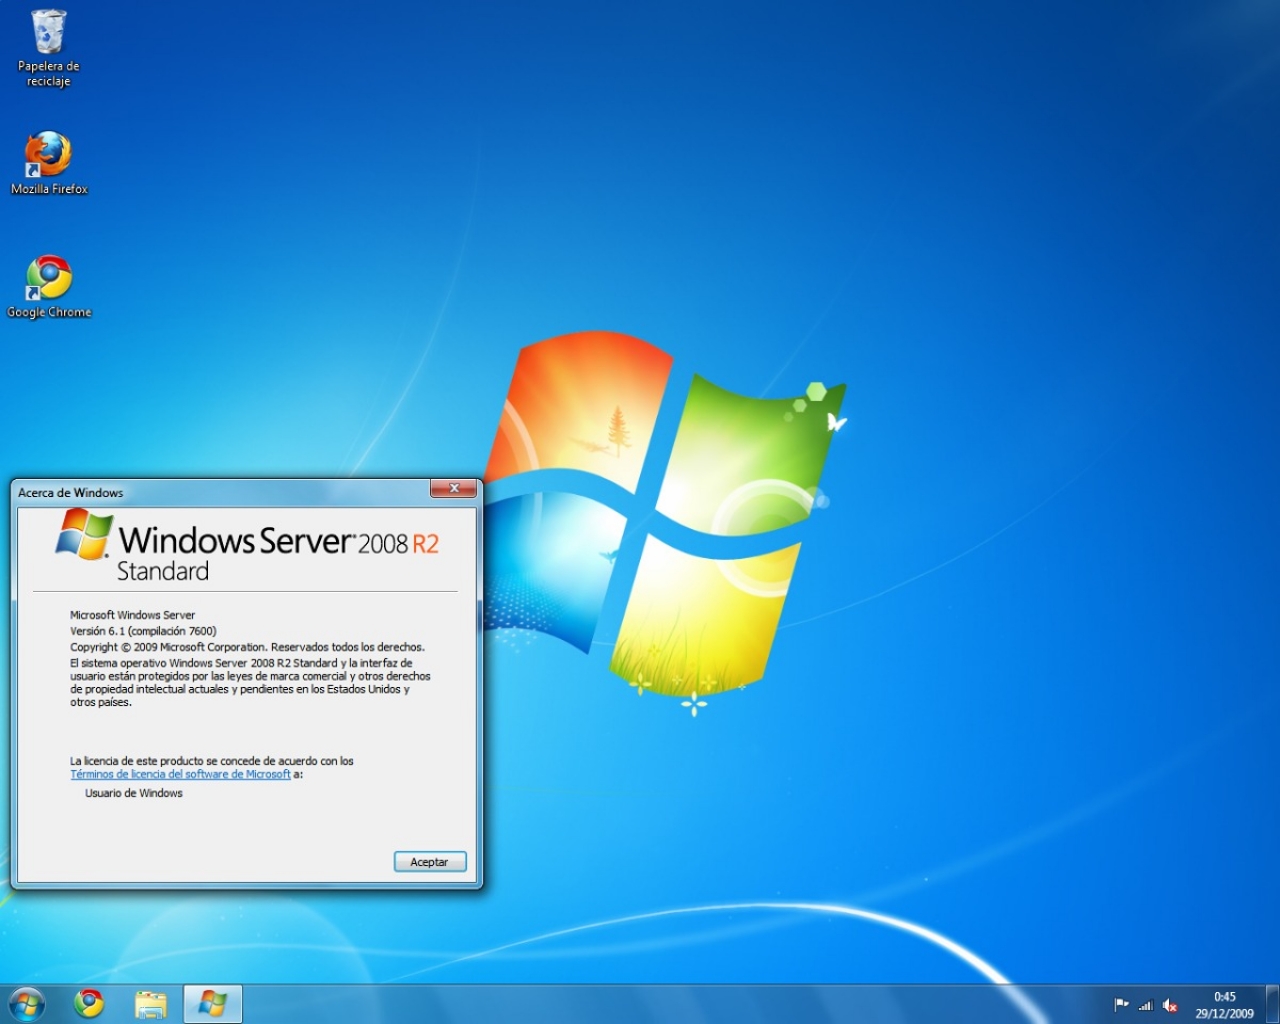 download teamviewer for windows server 2008 r2